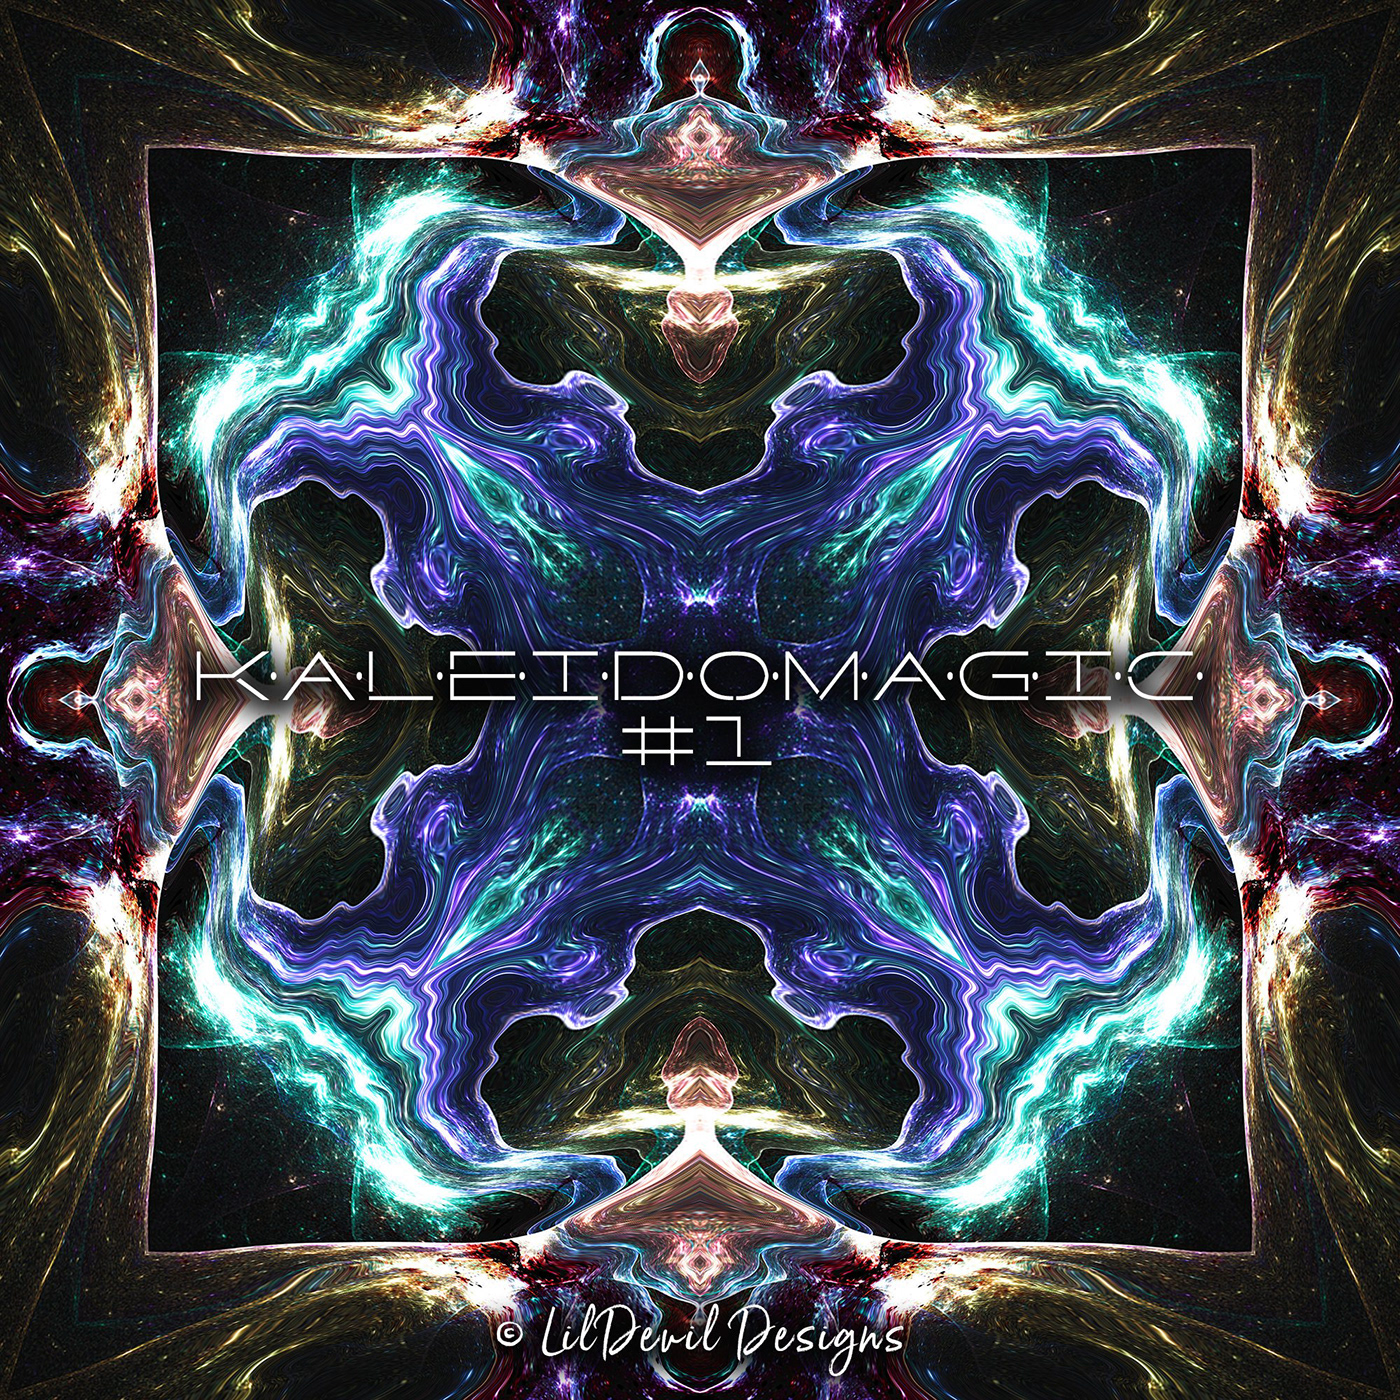 kaleidoscope pattern design  Magic   kaleido lildevildesigns dark Digital Art  lildevil gfxcandy colorful For Designers CD Cover Design patterns for designers design resources